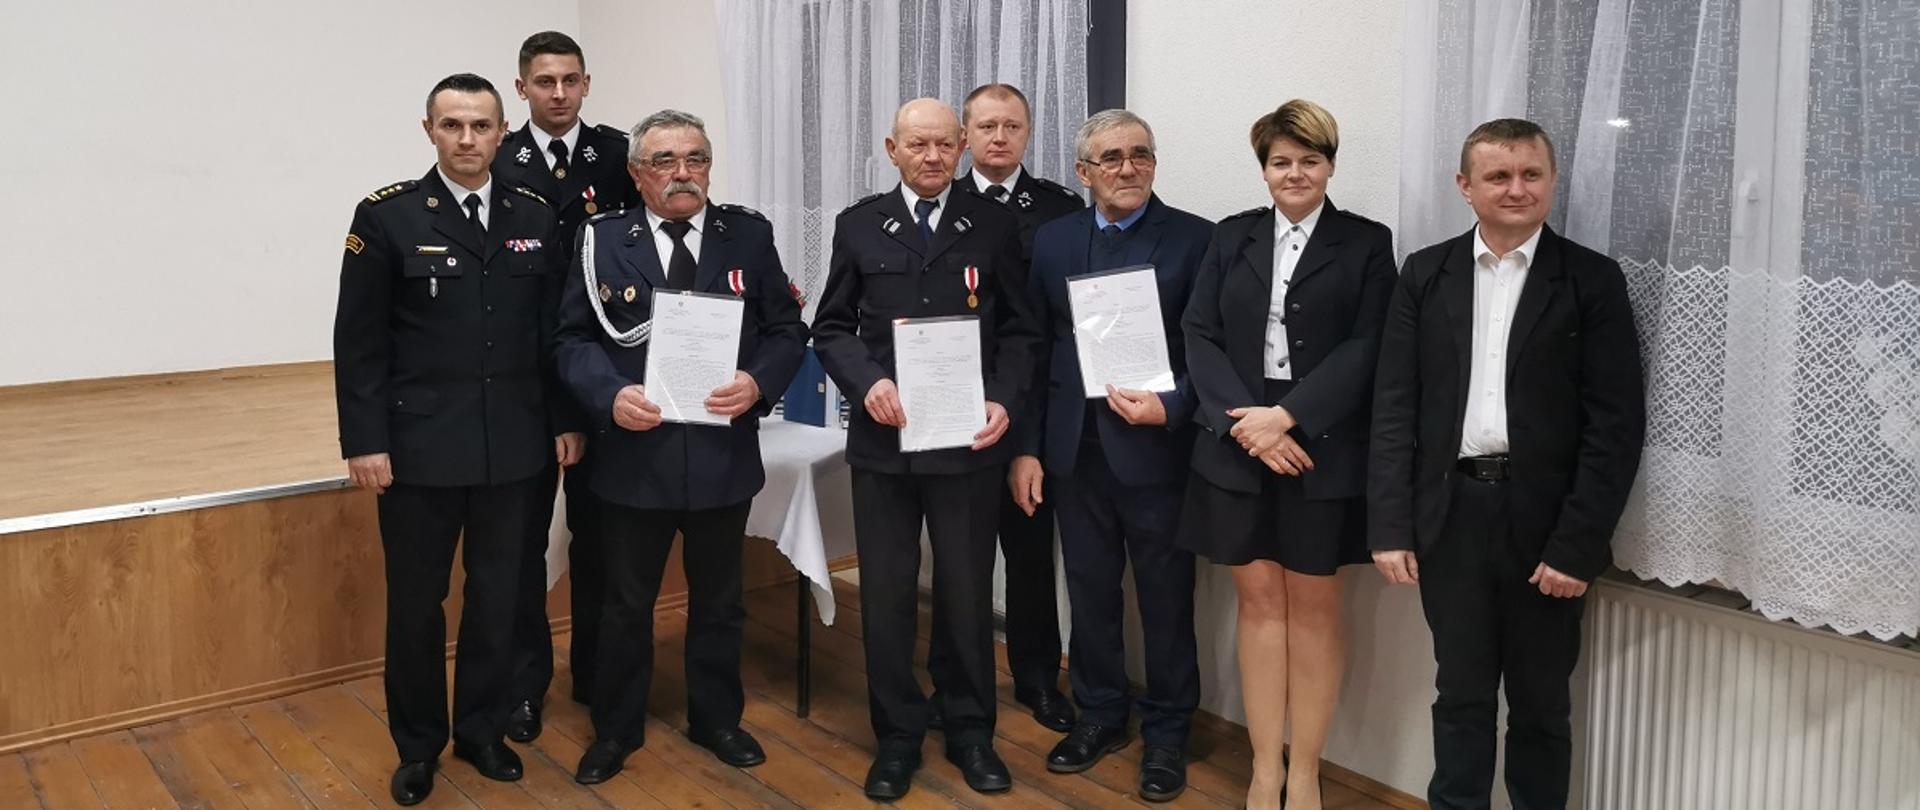 Zdjęcia przedstawia strażaków którym zostały wręczone decyzje wraz z Komendantem Powiatowym PSP, wójtem gminy oraz druhami z OSP Tuczępy